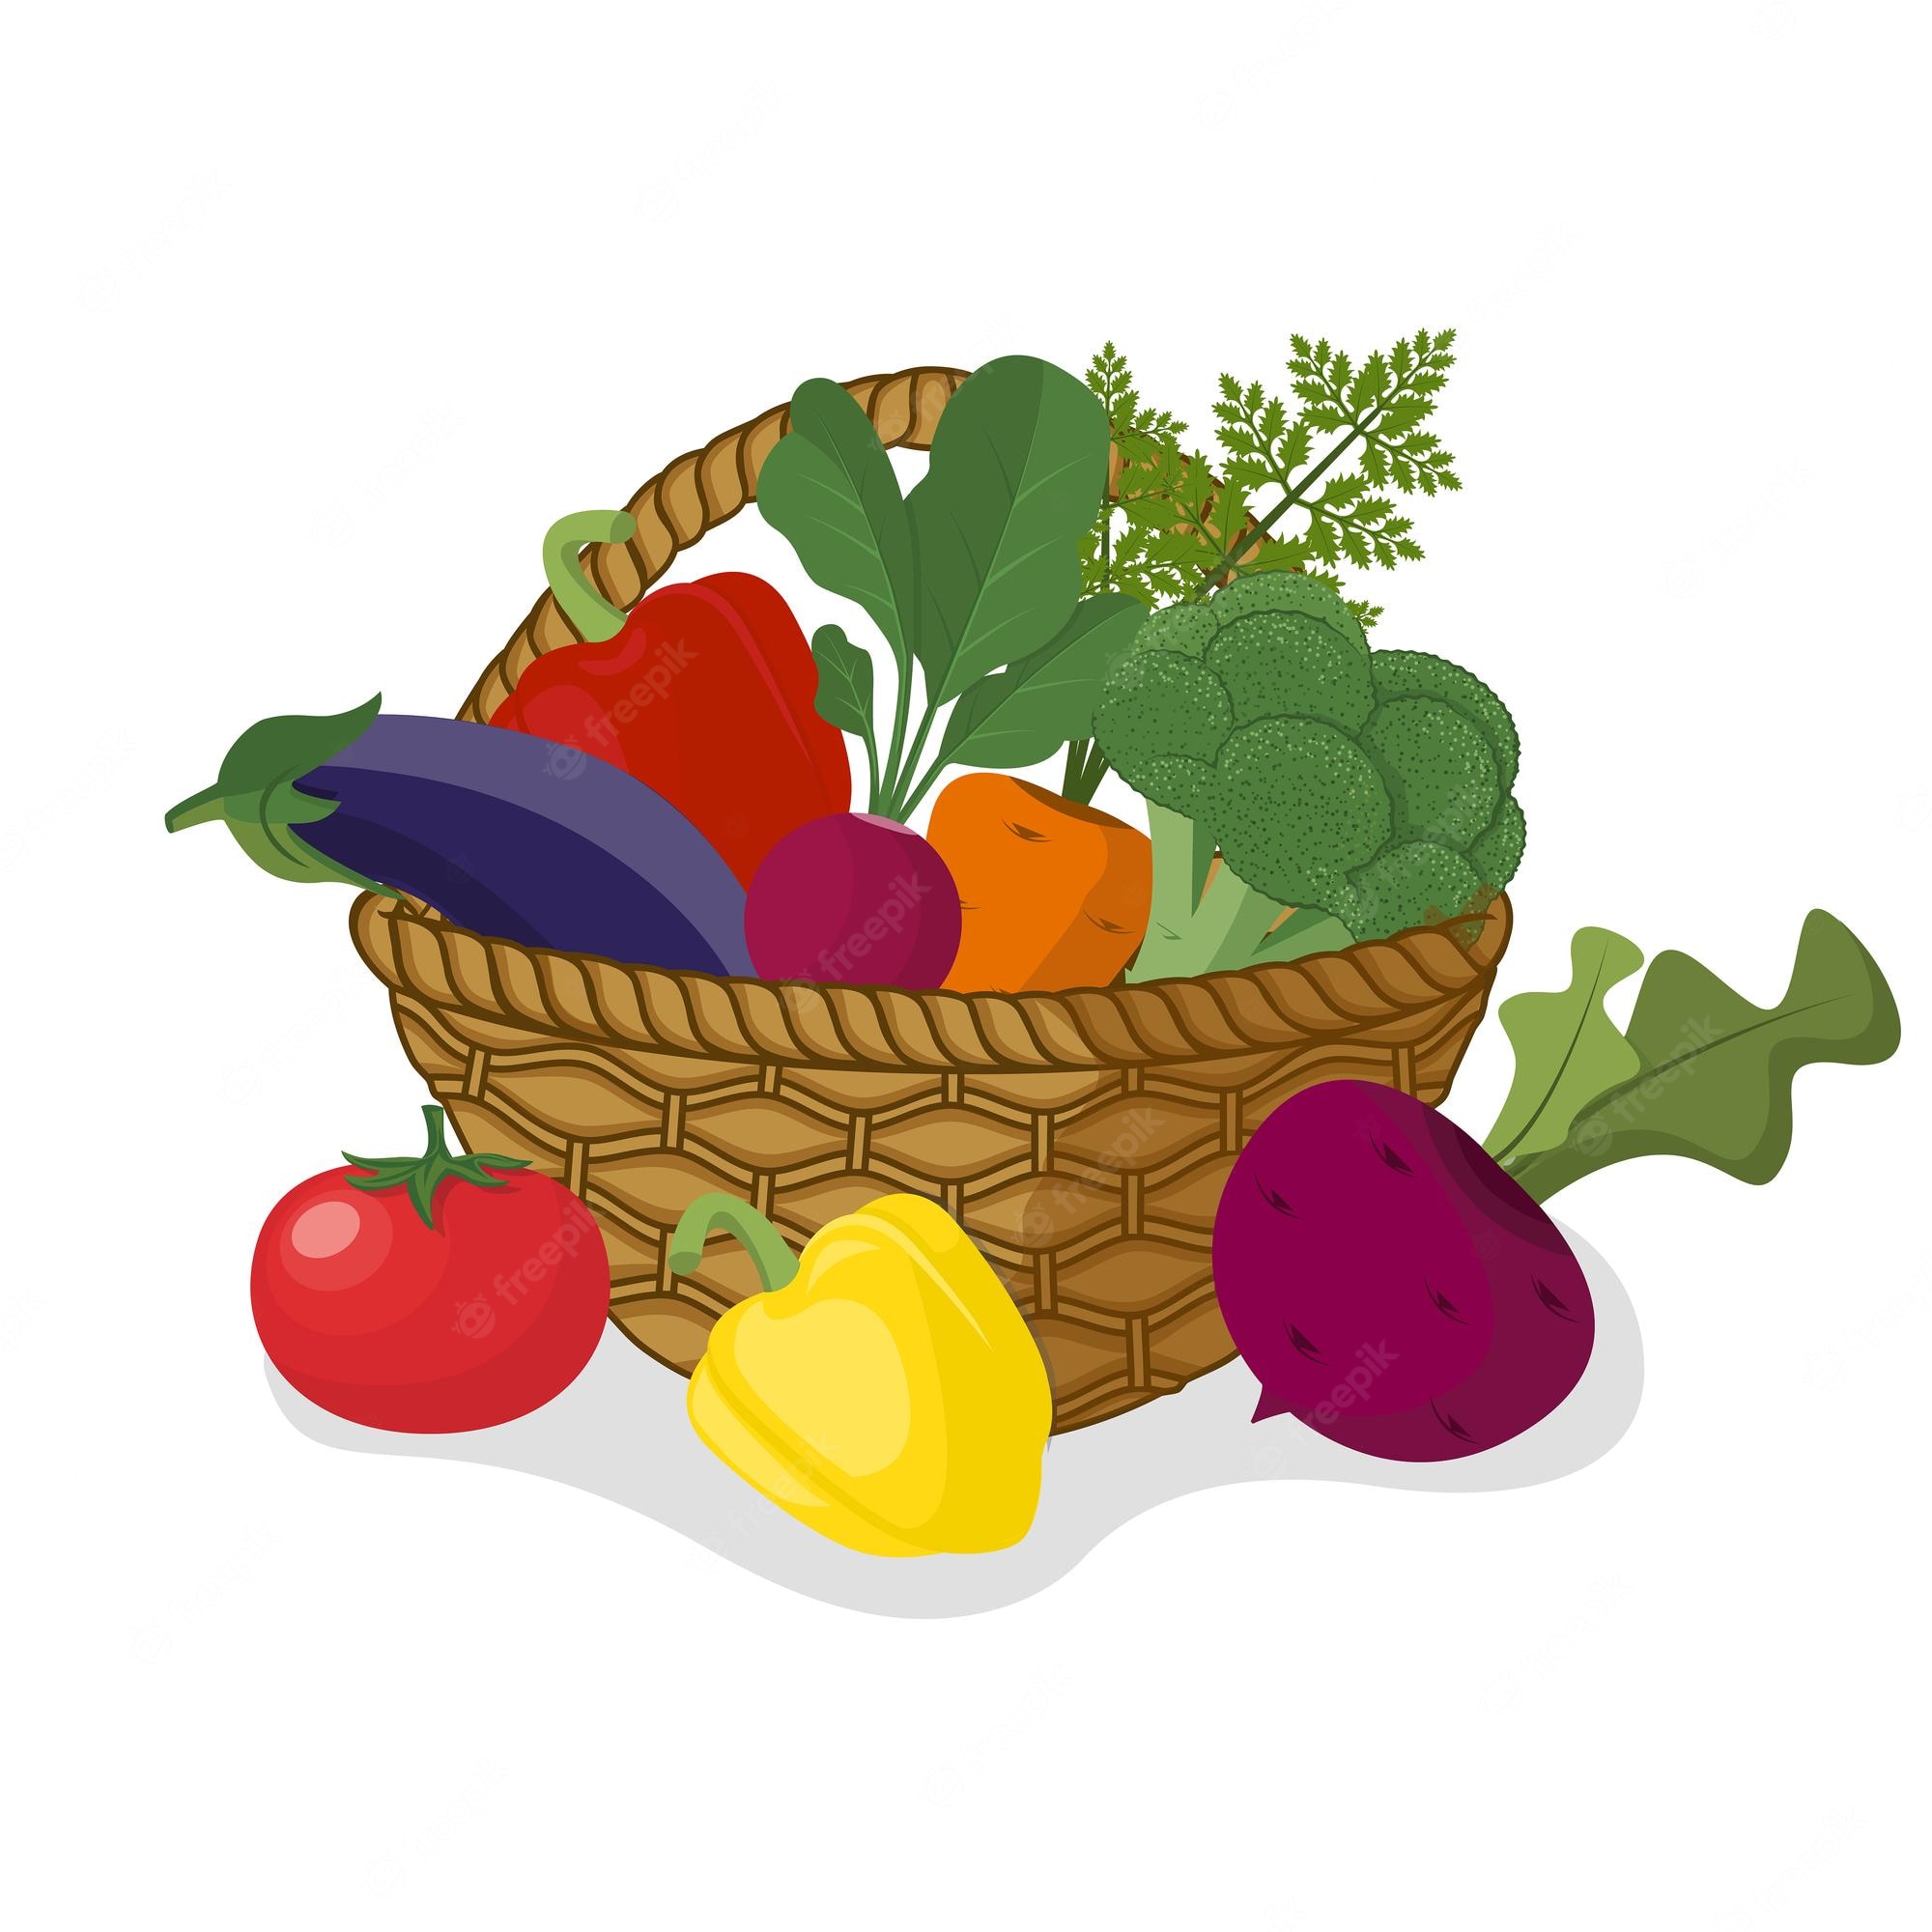 Premium Vector | Vegetable basket coloring page for kids kdp interior, vegetable  basket drawing, getable basket clipa